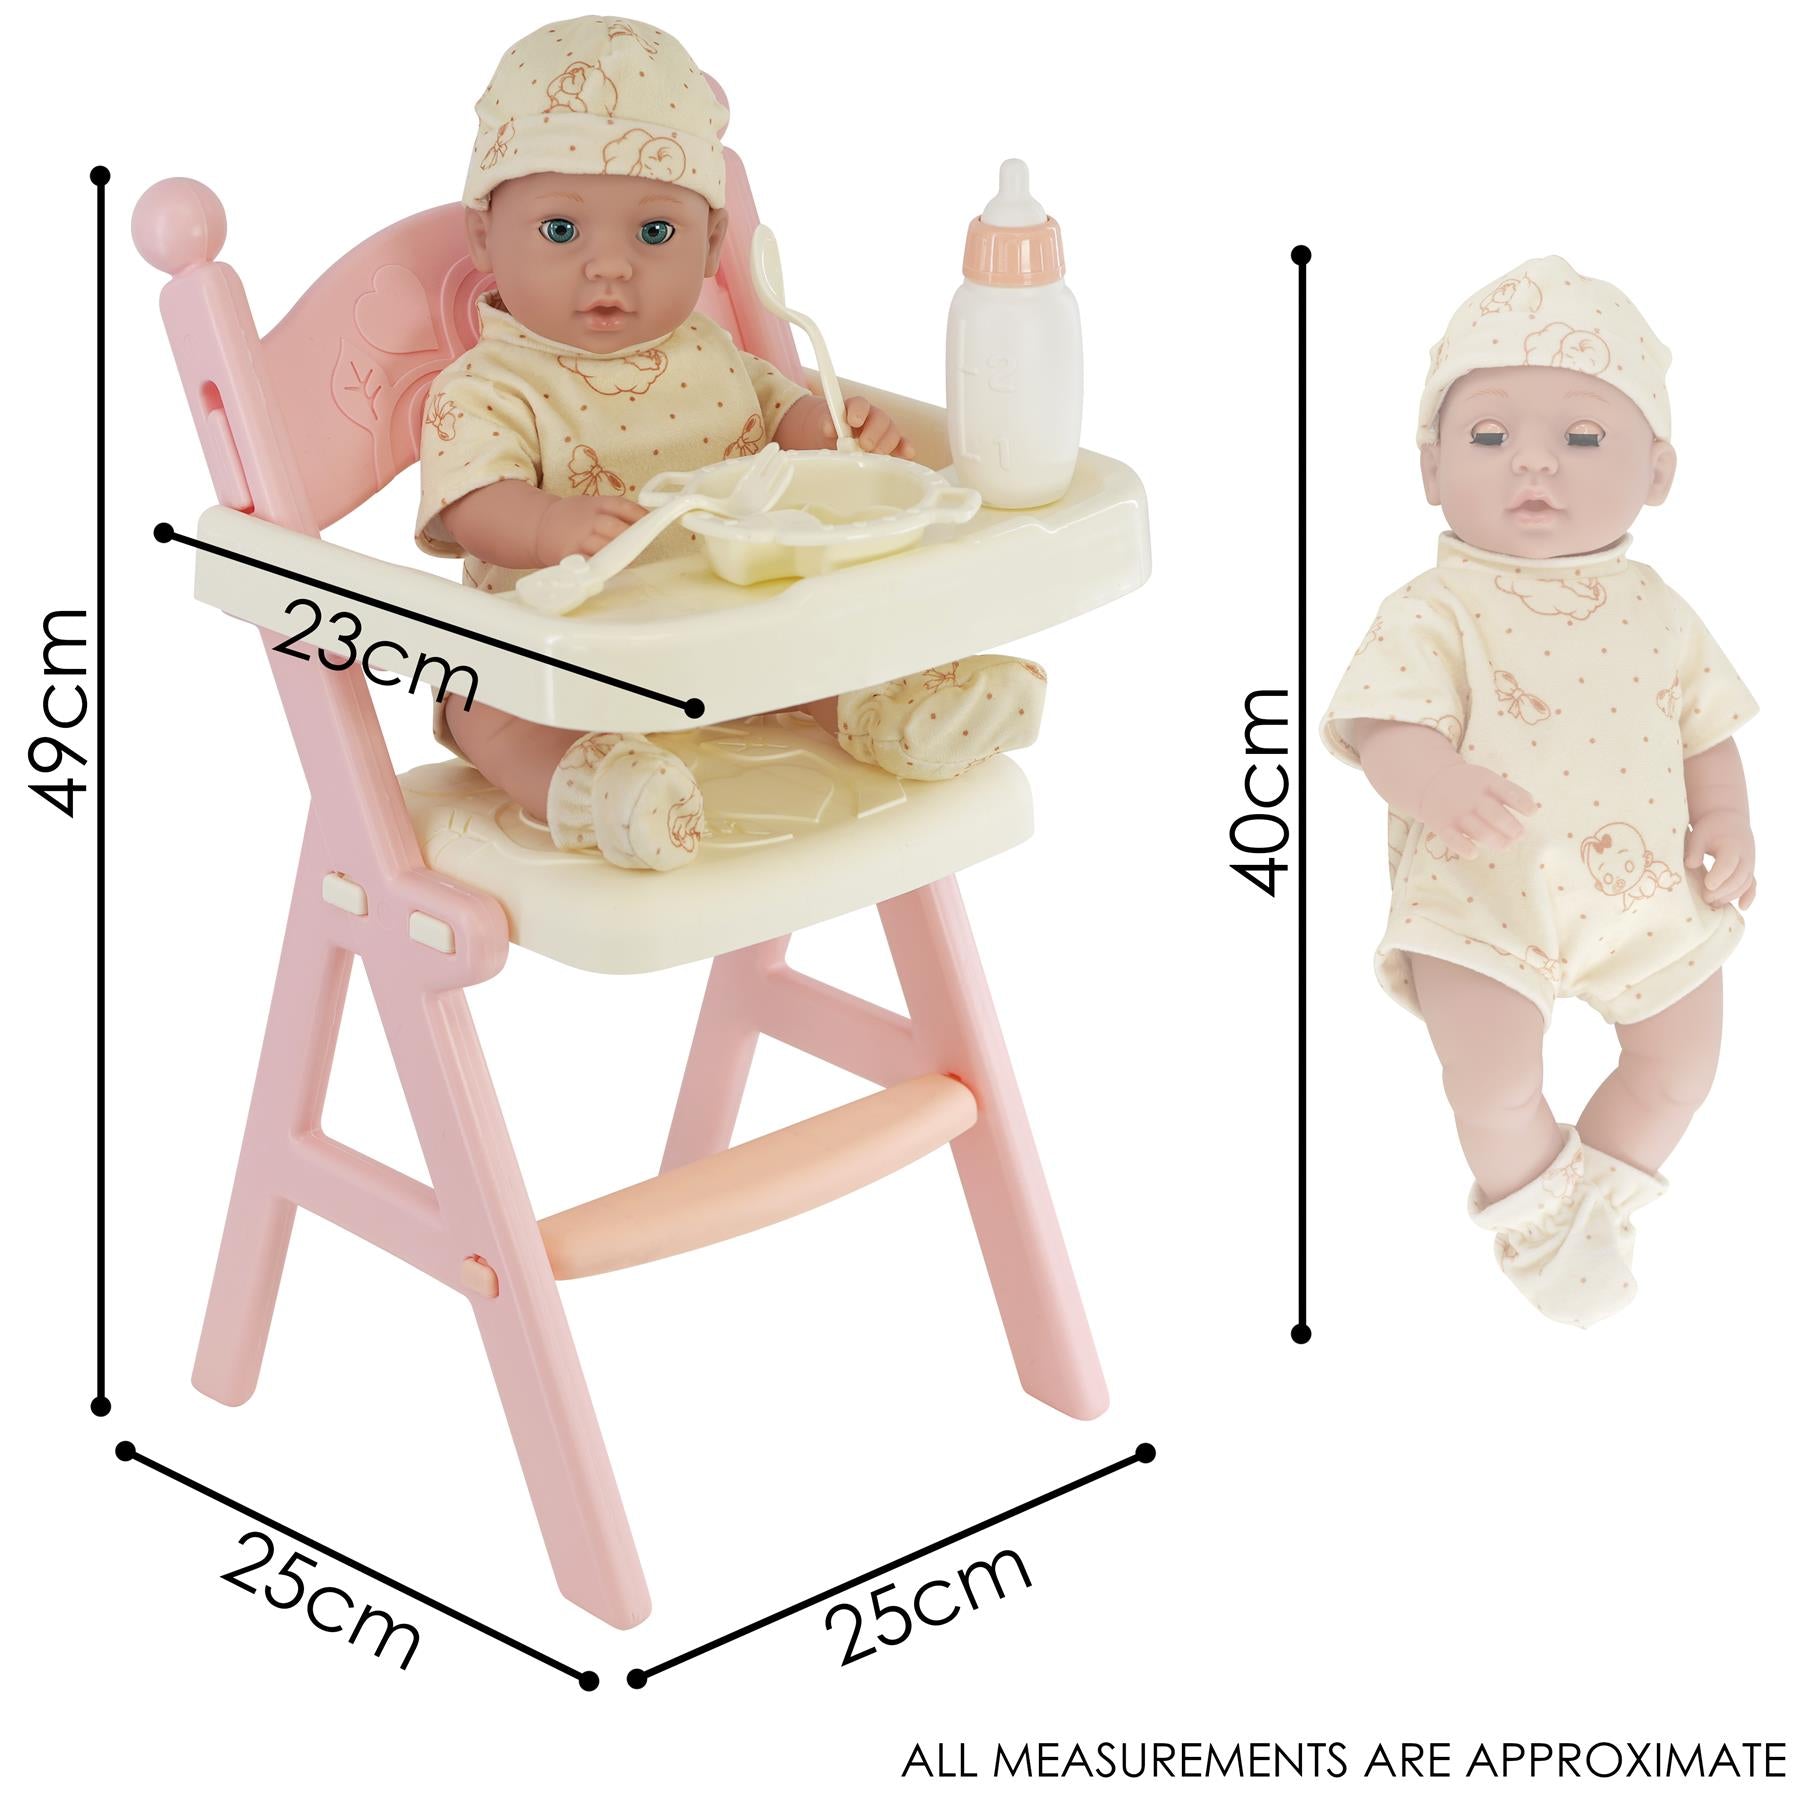 BiBi Doll Baby Doll with High Feeding Chair and Accessories Baby Doll with Feeding High Chair & Accessories